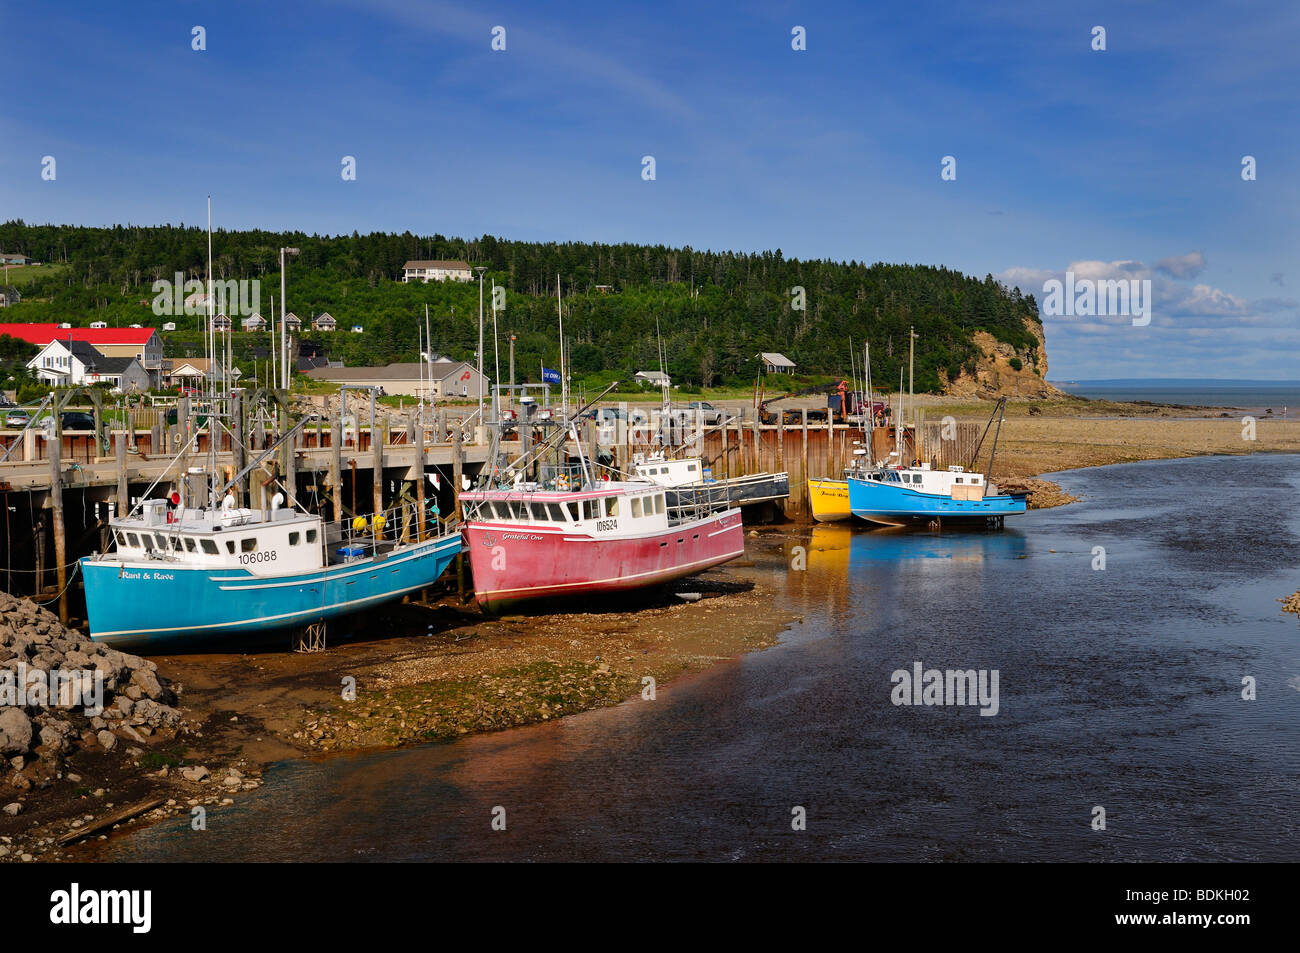 La rivière Upper Salmon et bateaux de pêche sur des fonds marins à sec à marée basse sur la baie de Fundy au Nouveau-Brunswick Alma Banque D'Images